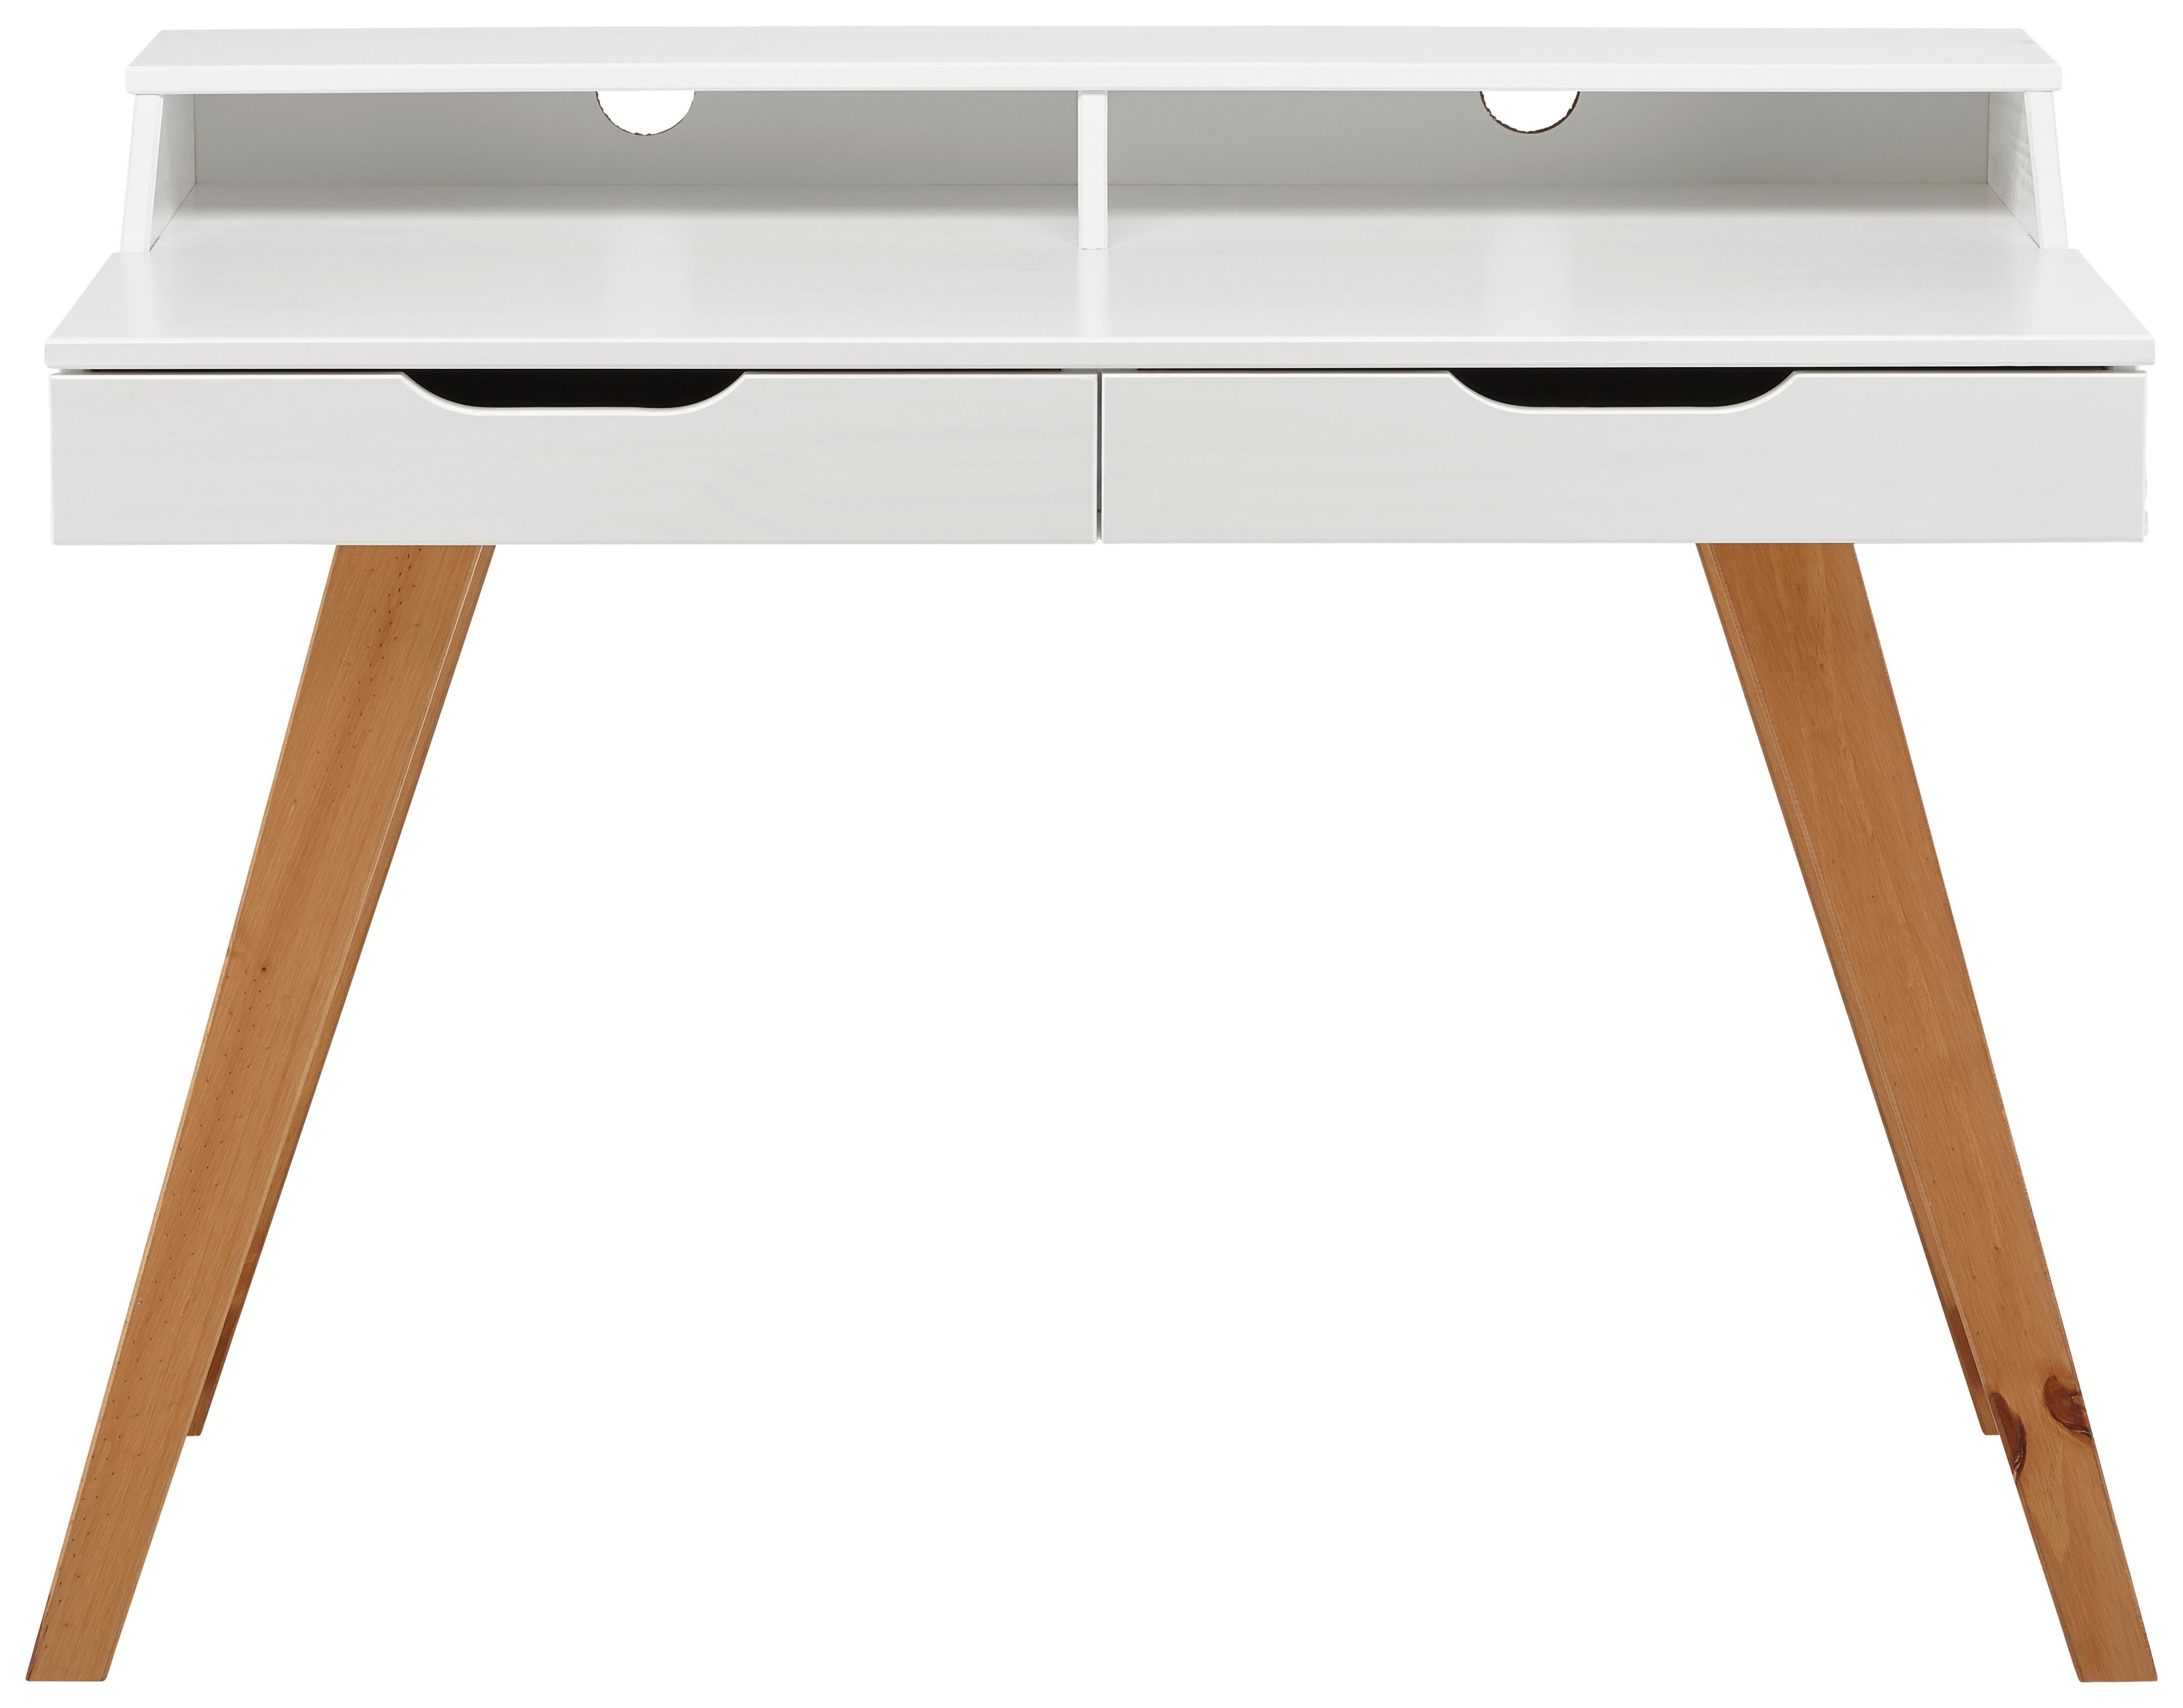 Schreibtisch in Weiß/Walnuss - Walnussfarben/Weiß, Design, Holz/Holzwerkstoff (110/85/58cm) - Based